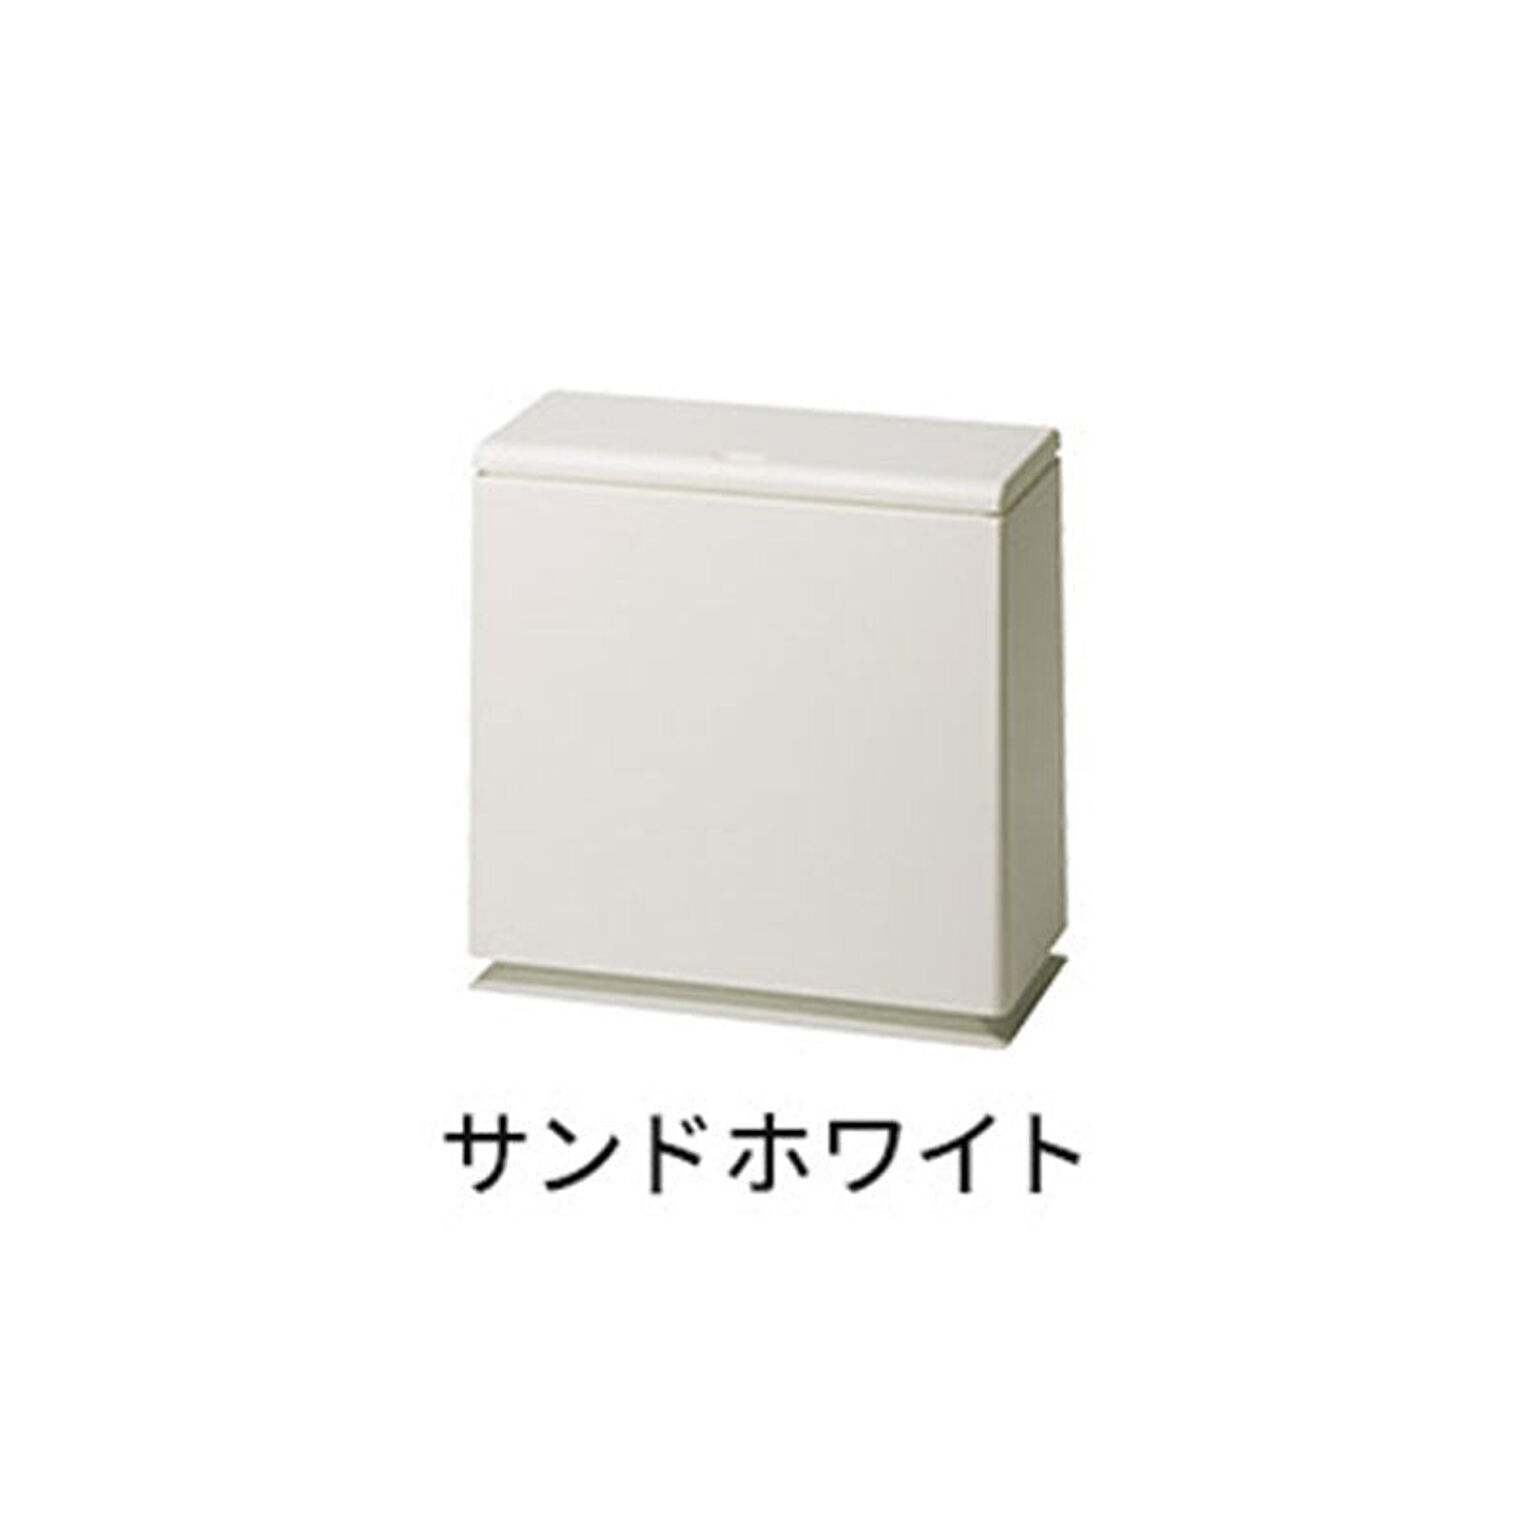 【ideaco/イデアコ】TUBELOR kitchen flap / チューブラー キッチンフラップ